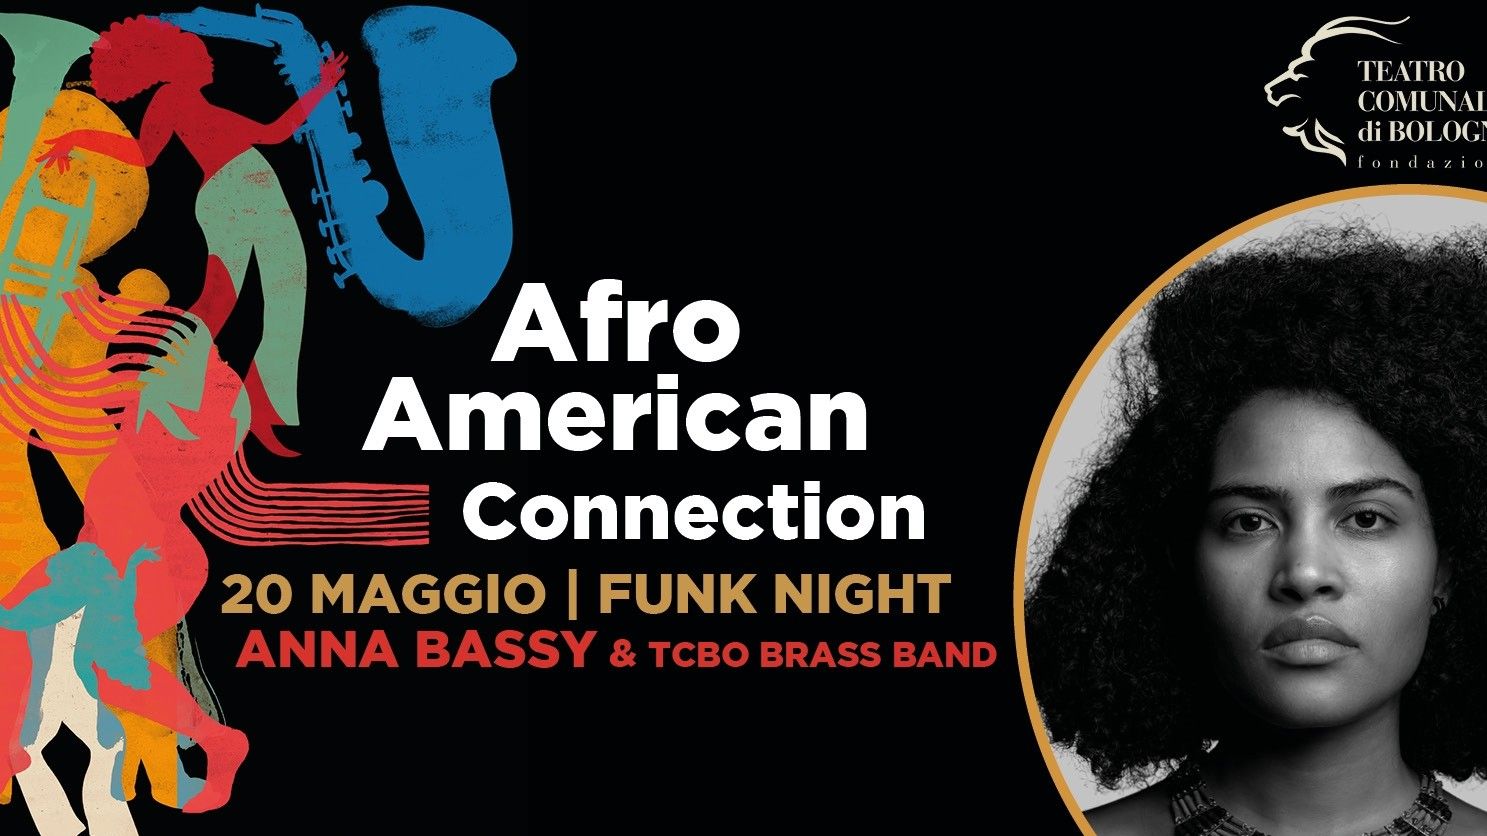 Anna Bassy & Tcbo Brass Band